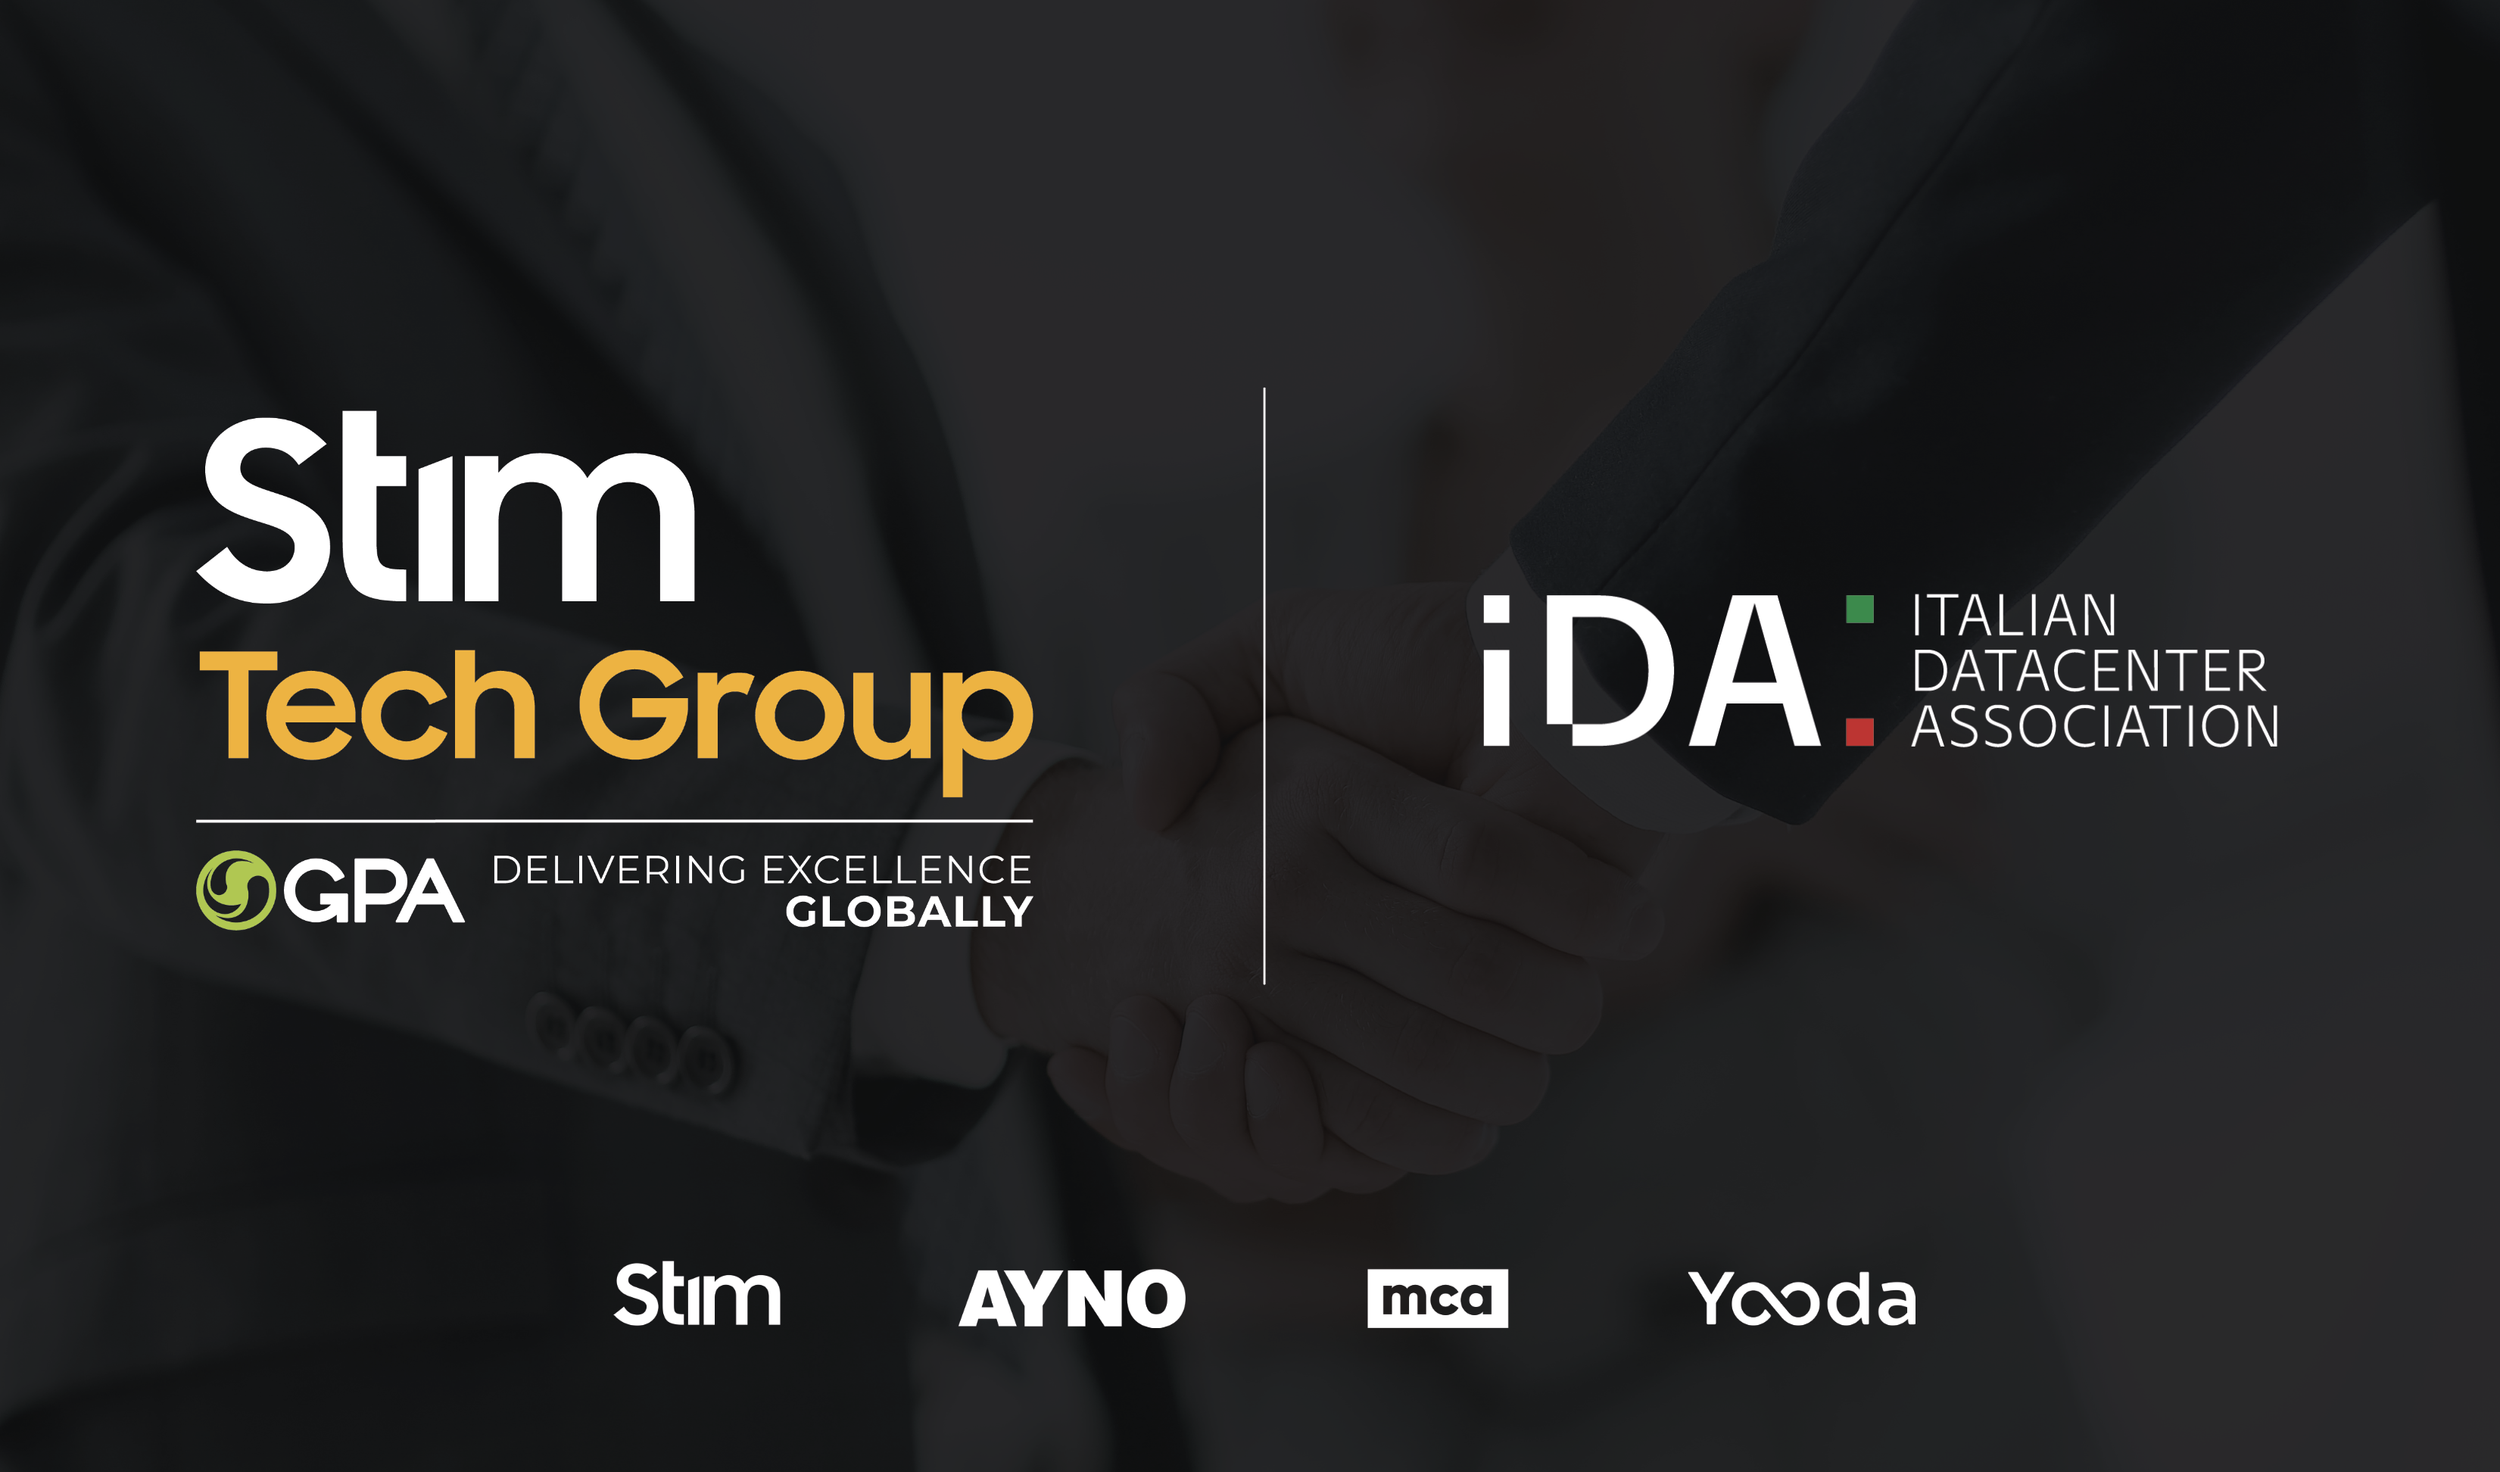 STIM Tech Group joins IDA - Italian Datacenter Association